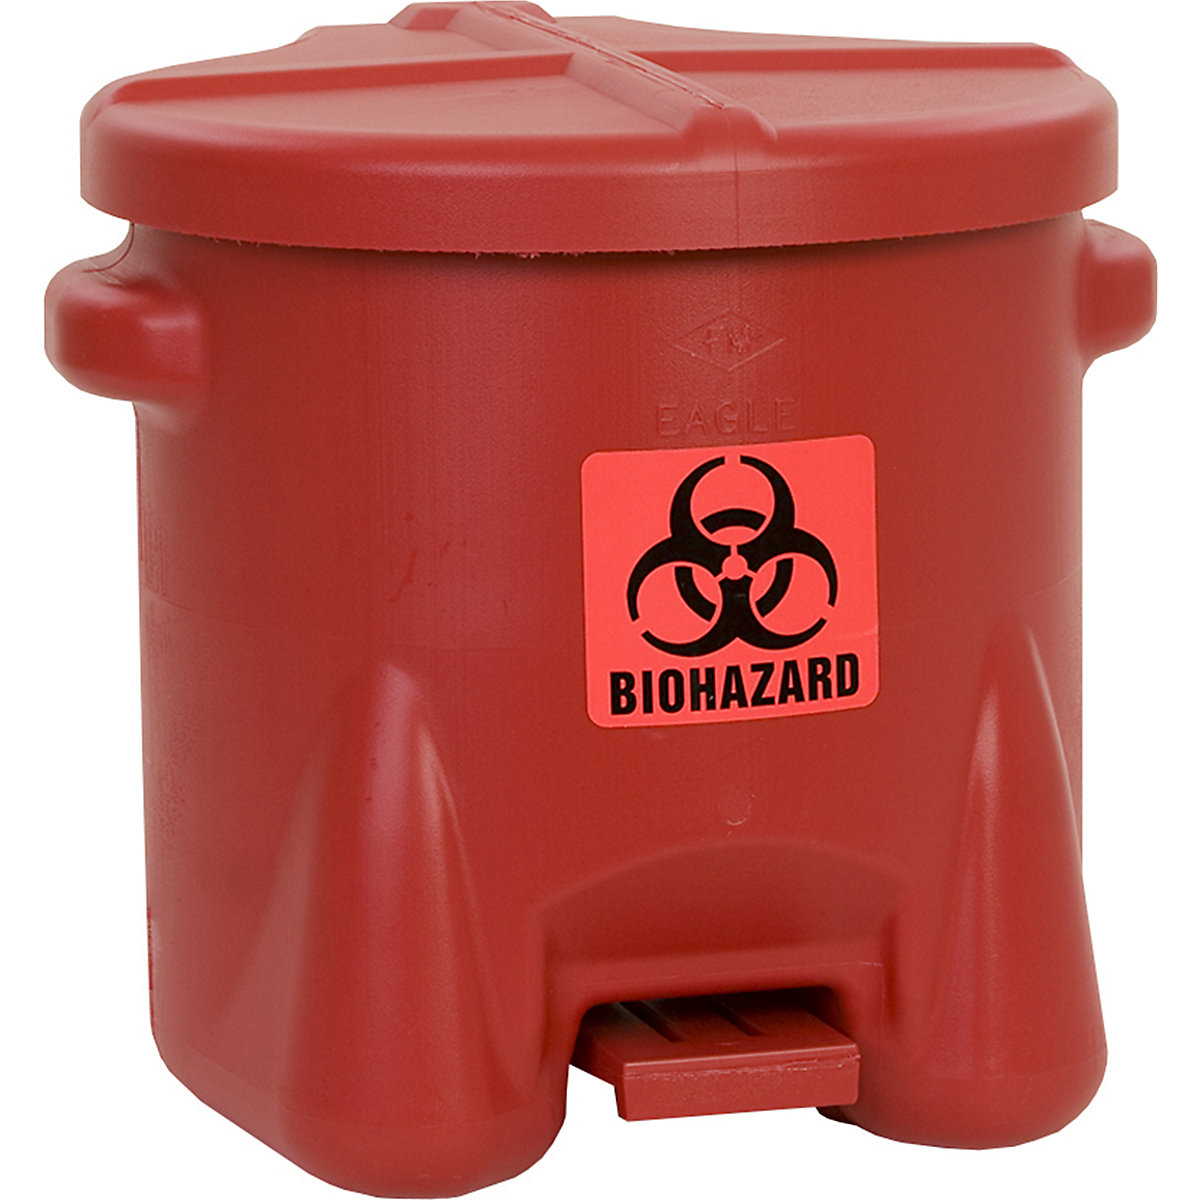 Veiligheidsafvalbak van PE voor de verwijdering van biogevaarlijke afvalsoorten - Justrite